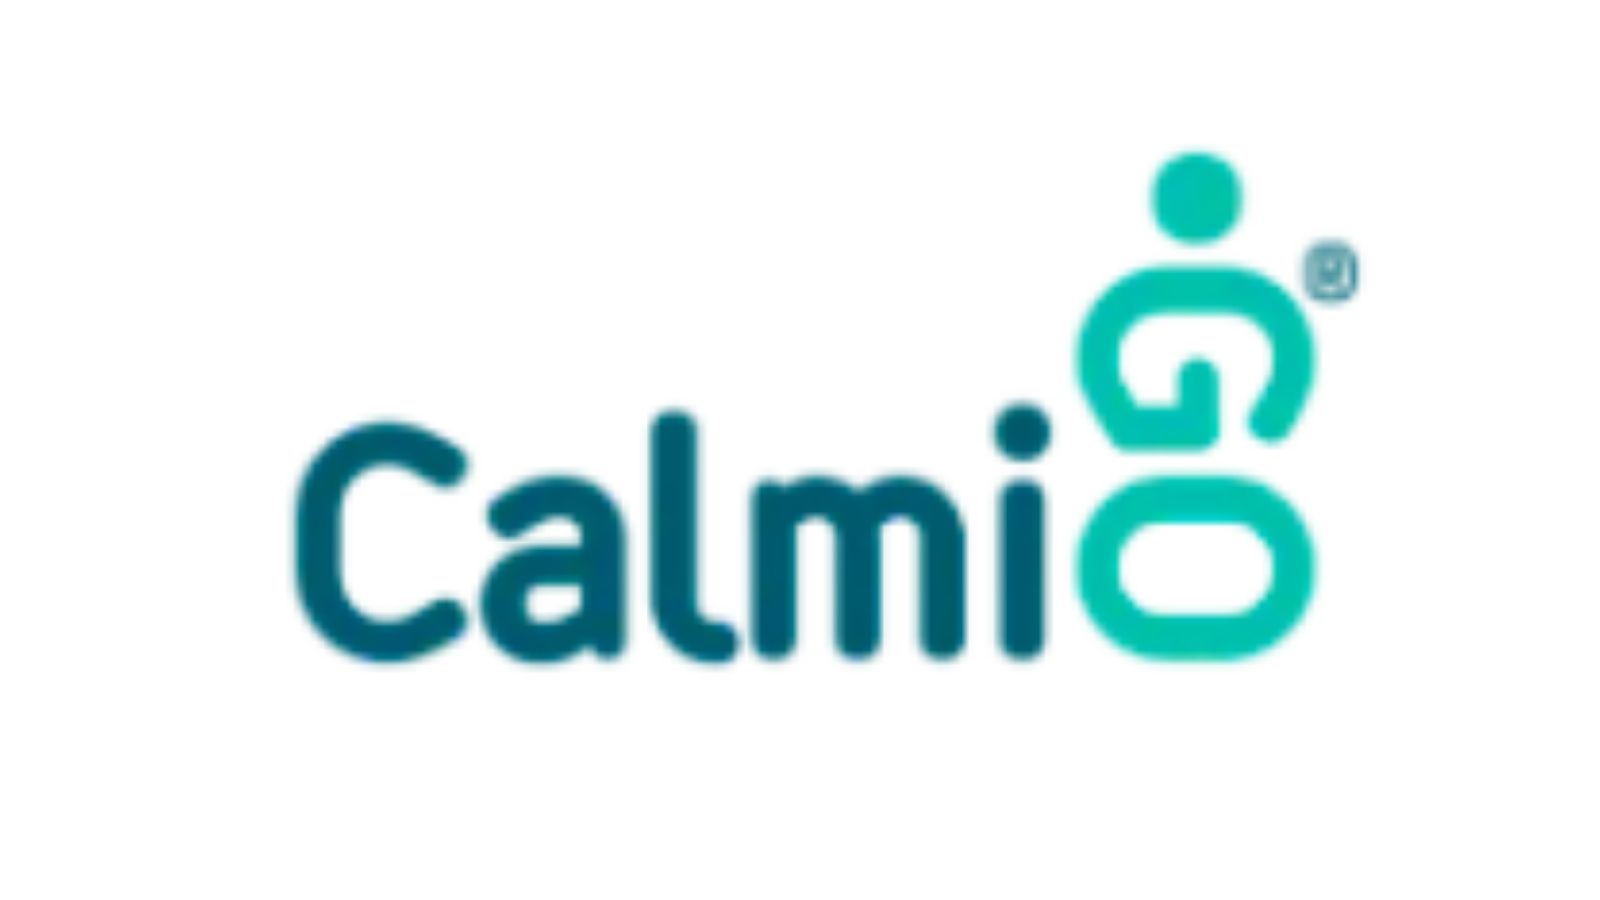 CalmiGo——一种天然、便携、无药物的解决方案，可用于心烦、焦虑和压力的时刻